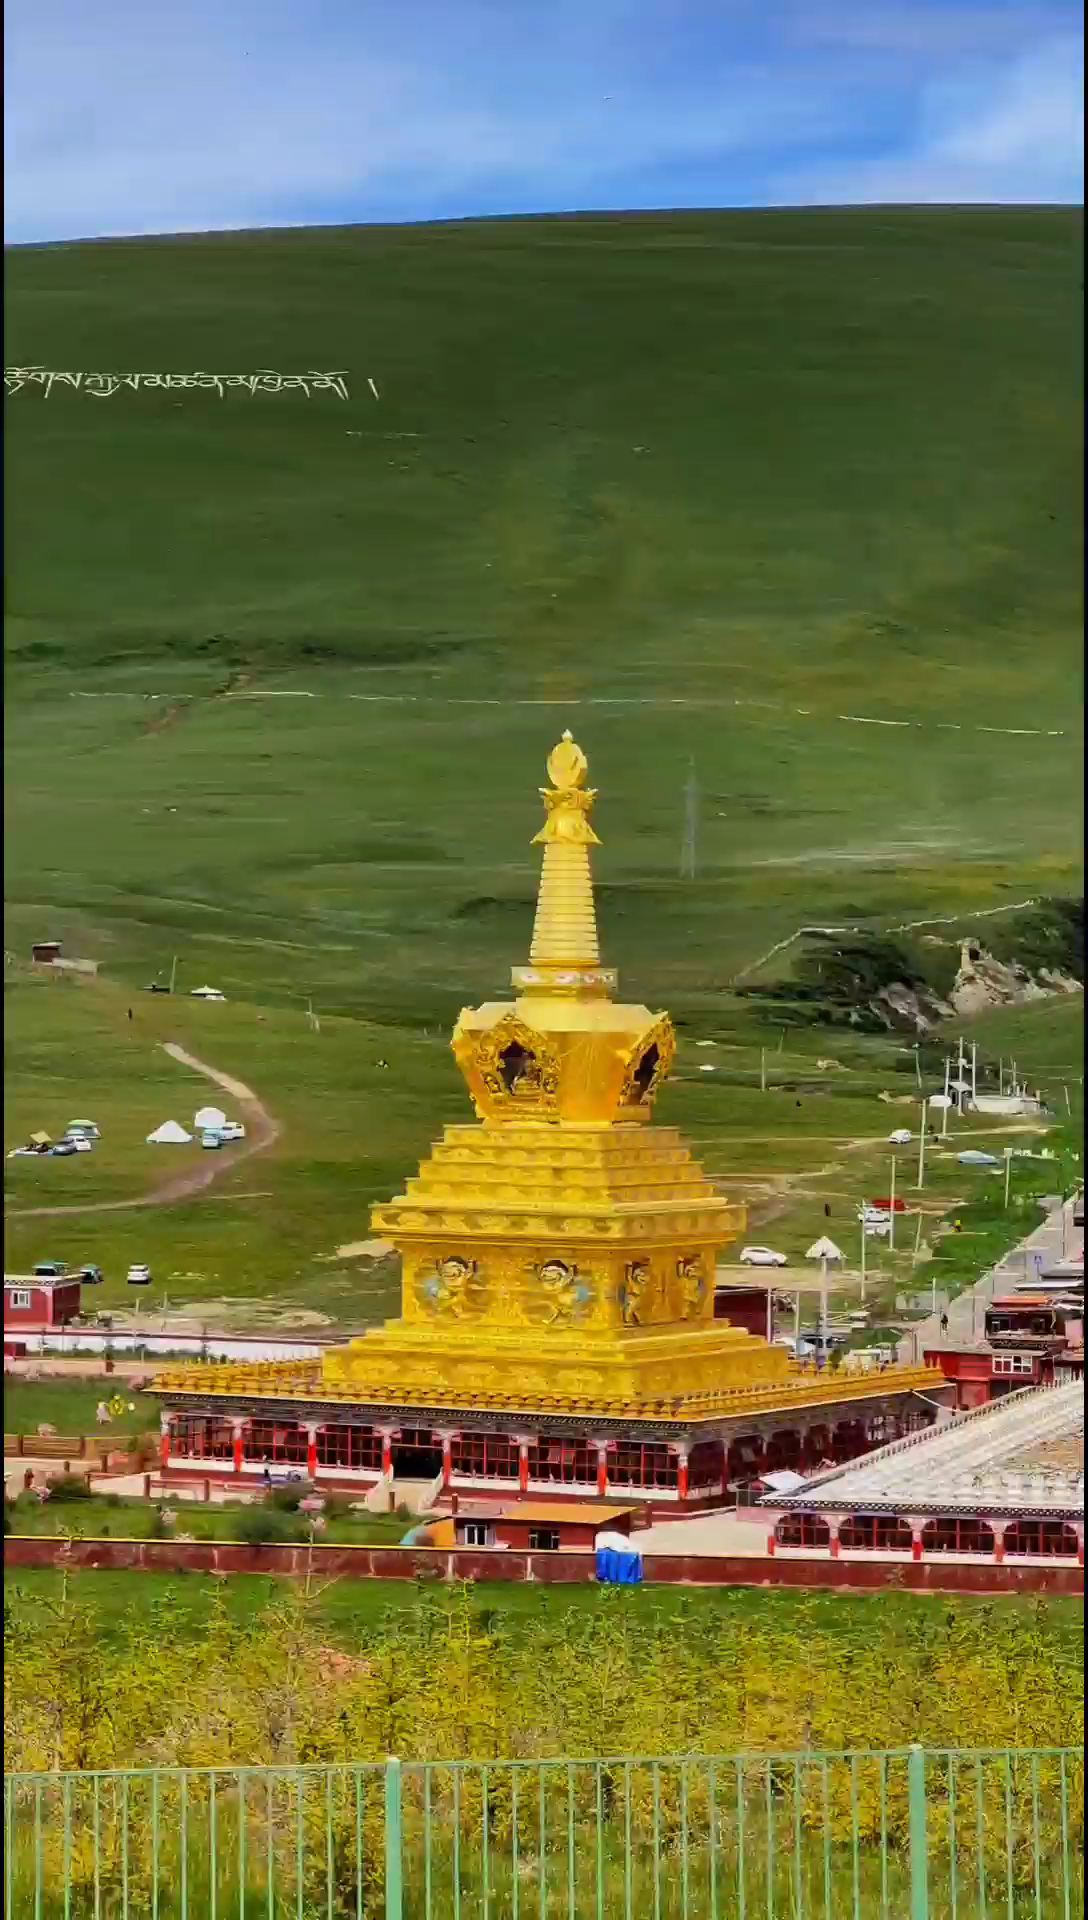 抖音带你看亚青寺～心灵的旅途#佛教圣地